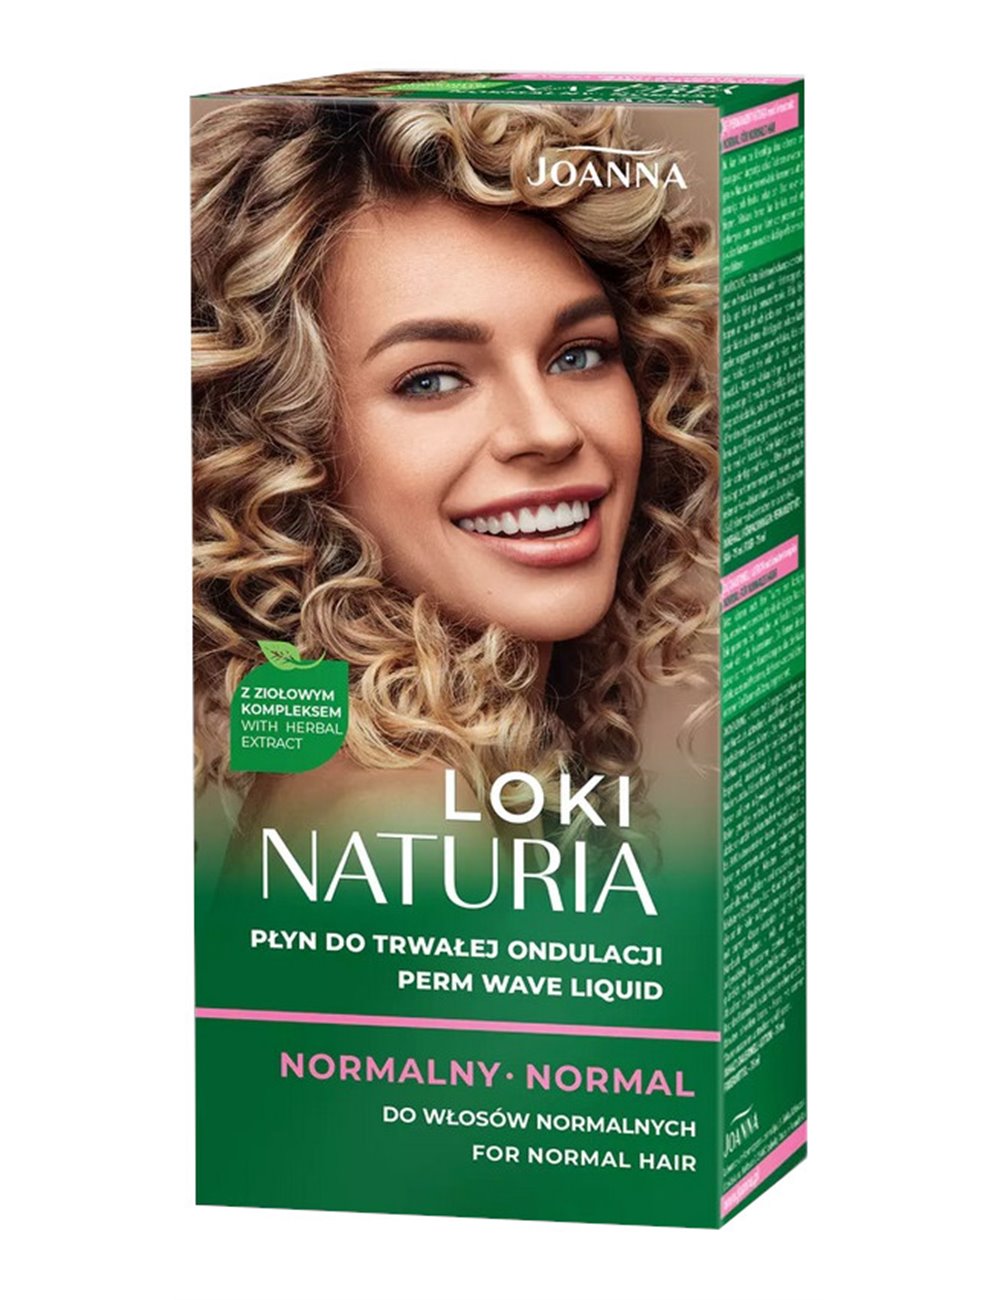 Joanna Naturia Loki Płyn do Trwałej Ondulacji do Włosów Normalnych 75 ml + Utrwalacz 75 ml